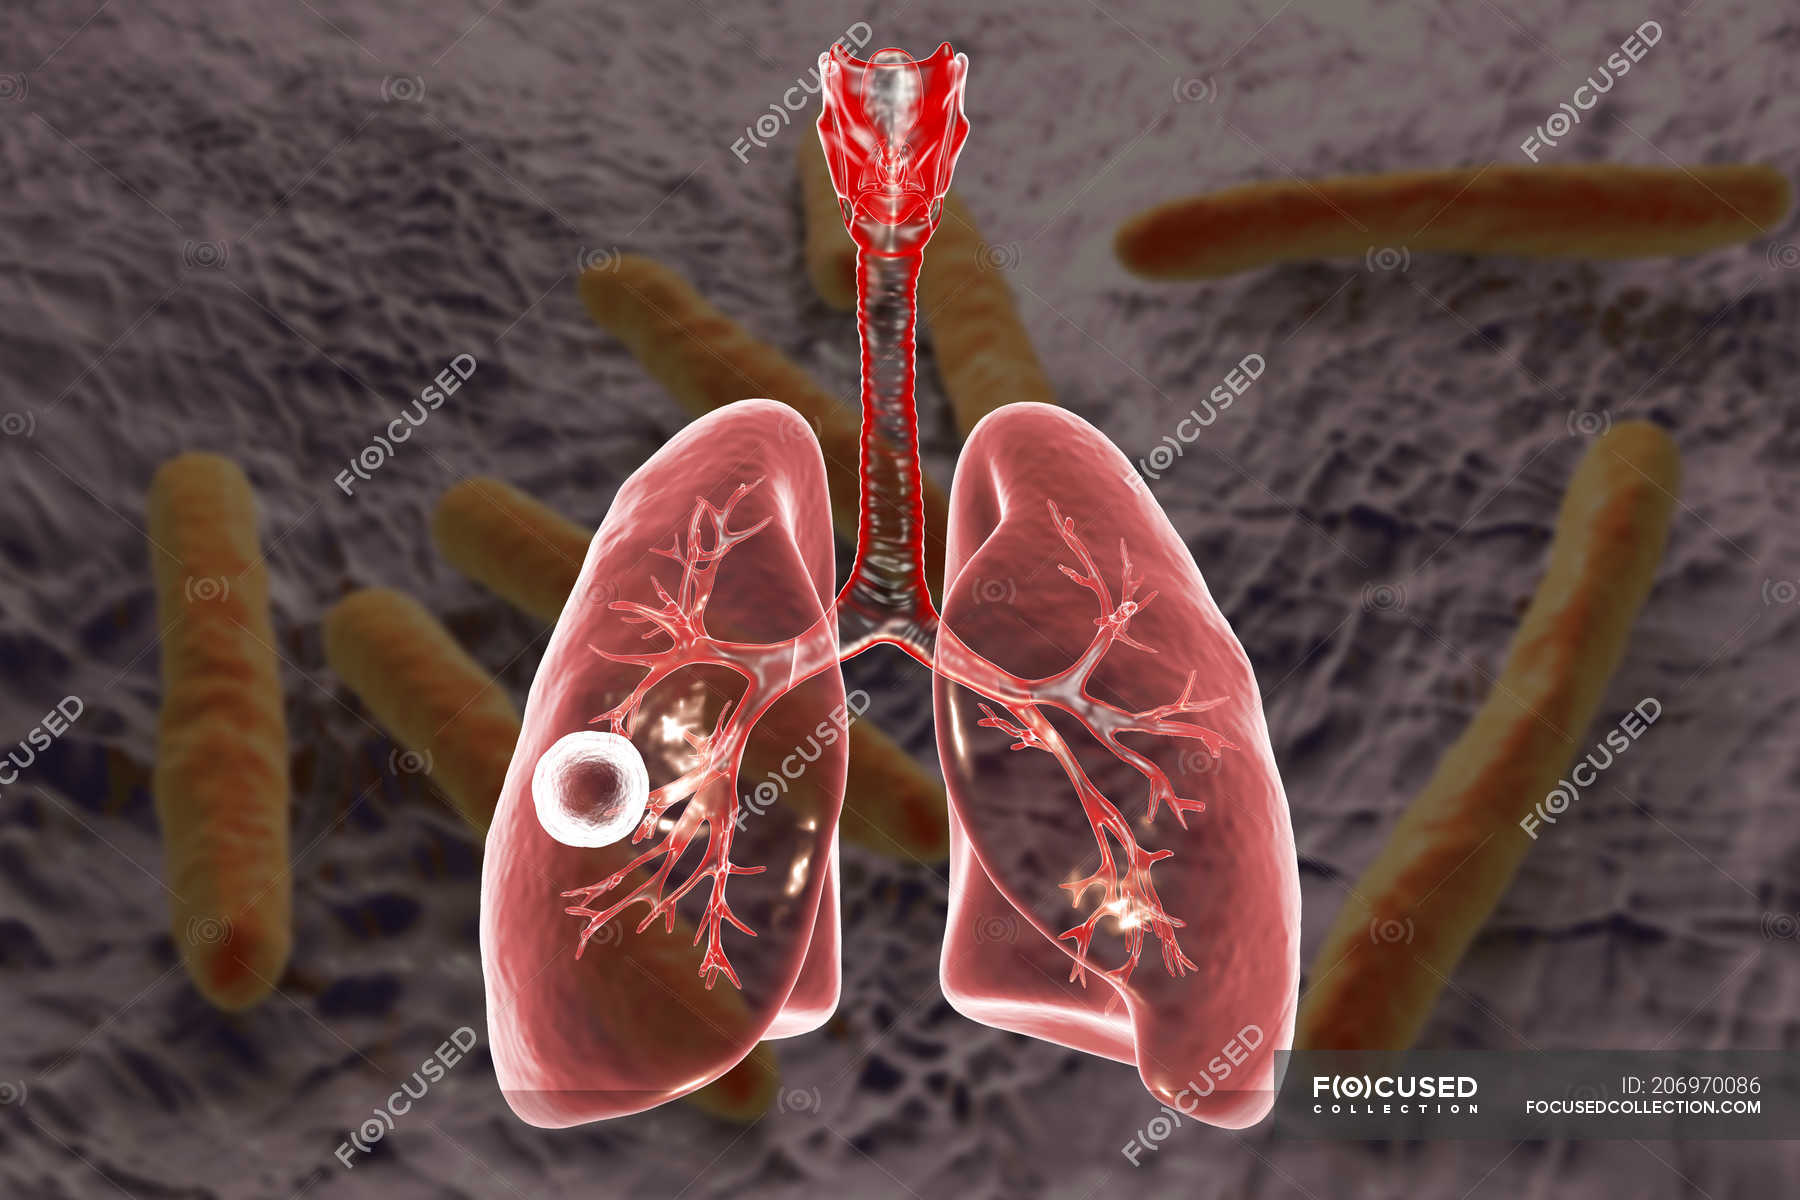 Cavidad fibrosa cavernosa de tuberculosis pulmonar en pulmón derecho